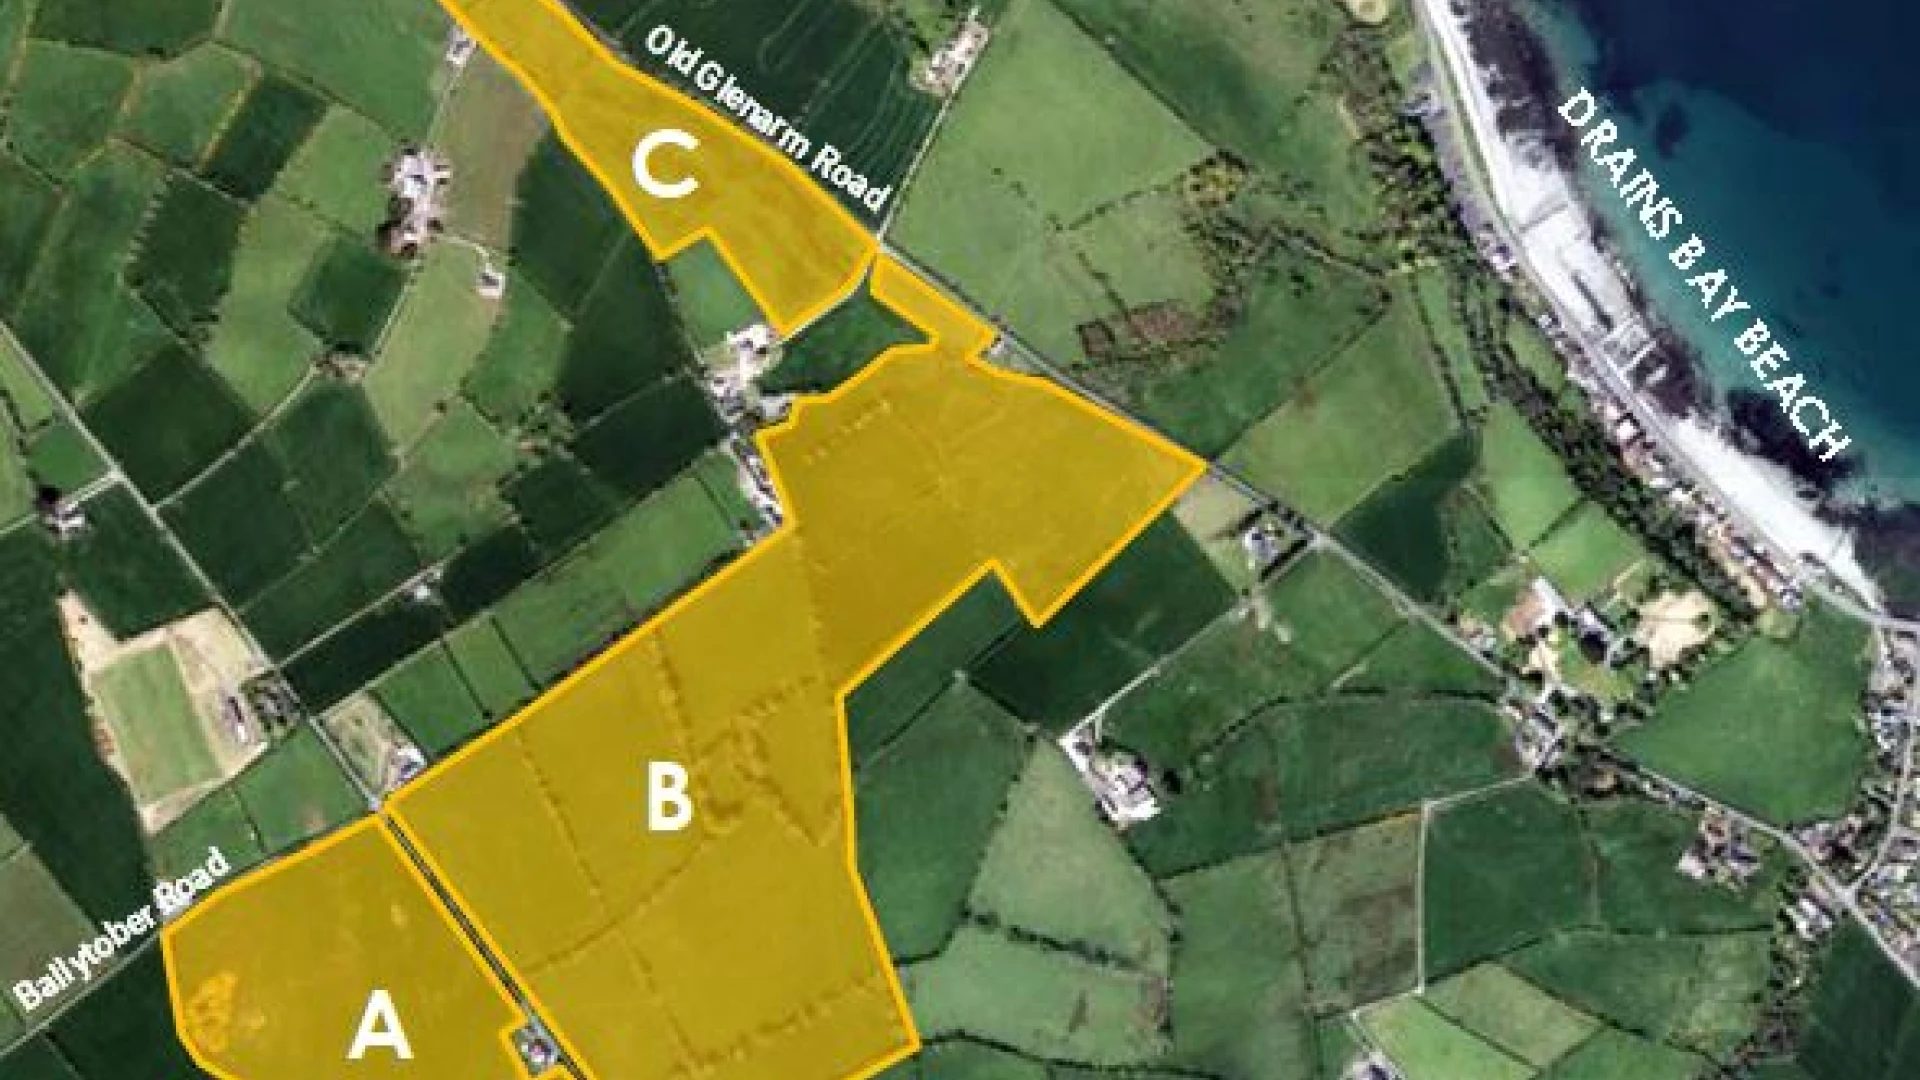 Agricultural Lands at Brustin Brae Road / Ballytober Road / Old Glenarm Road